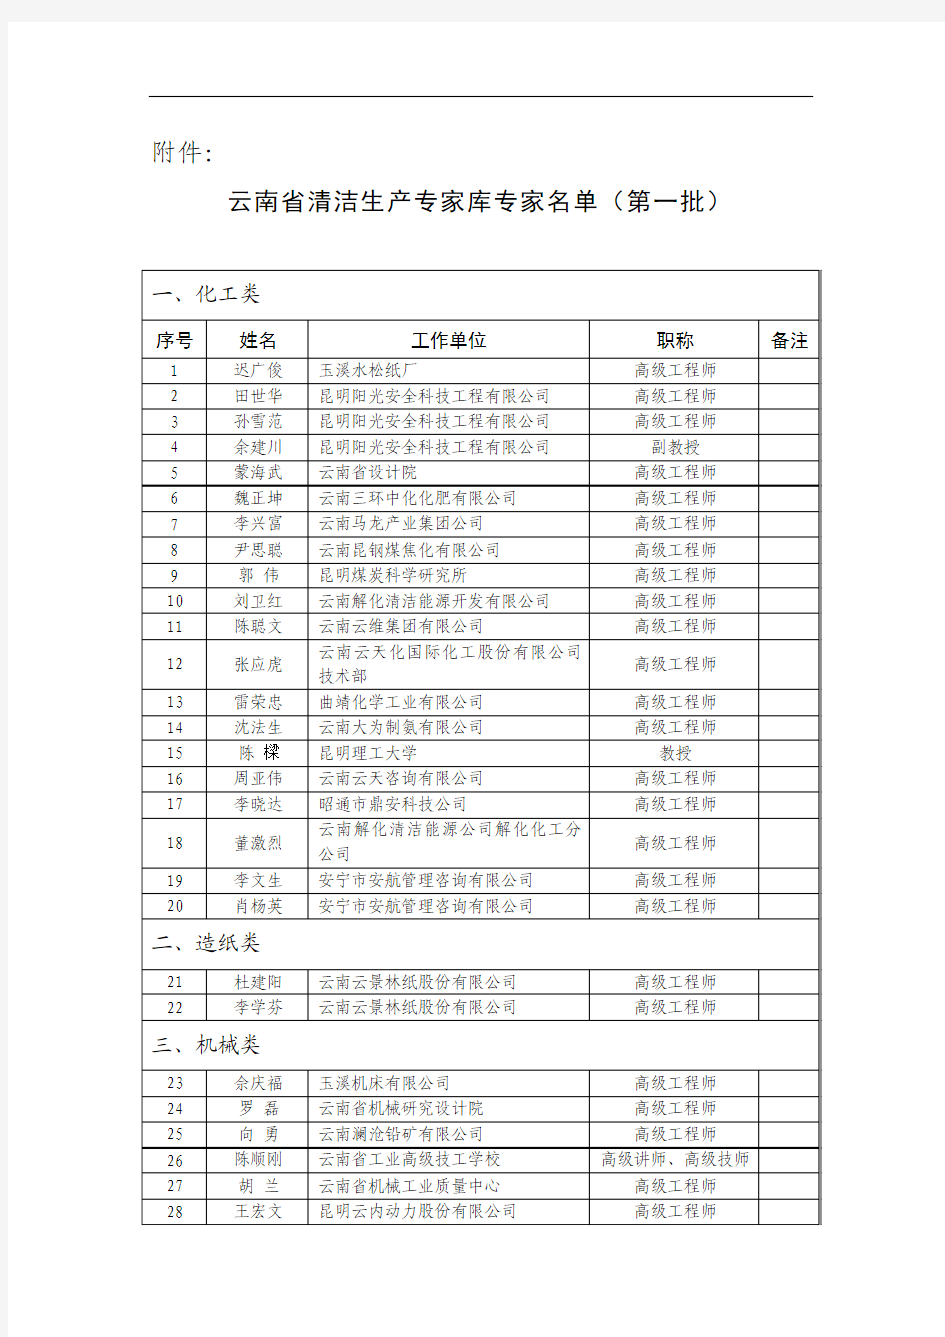 云南省清洁生产专家库专家名单(第一批)